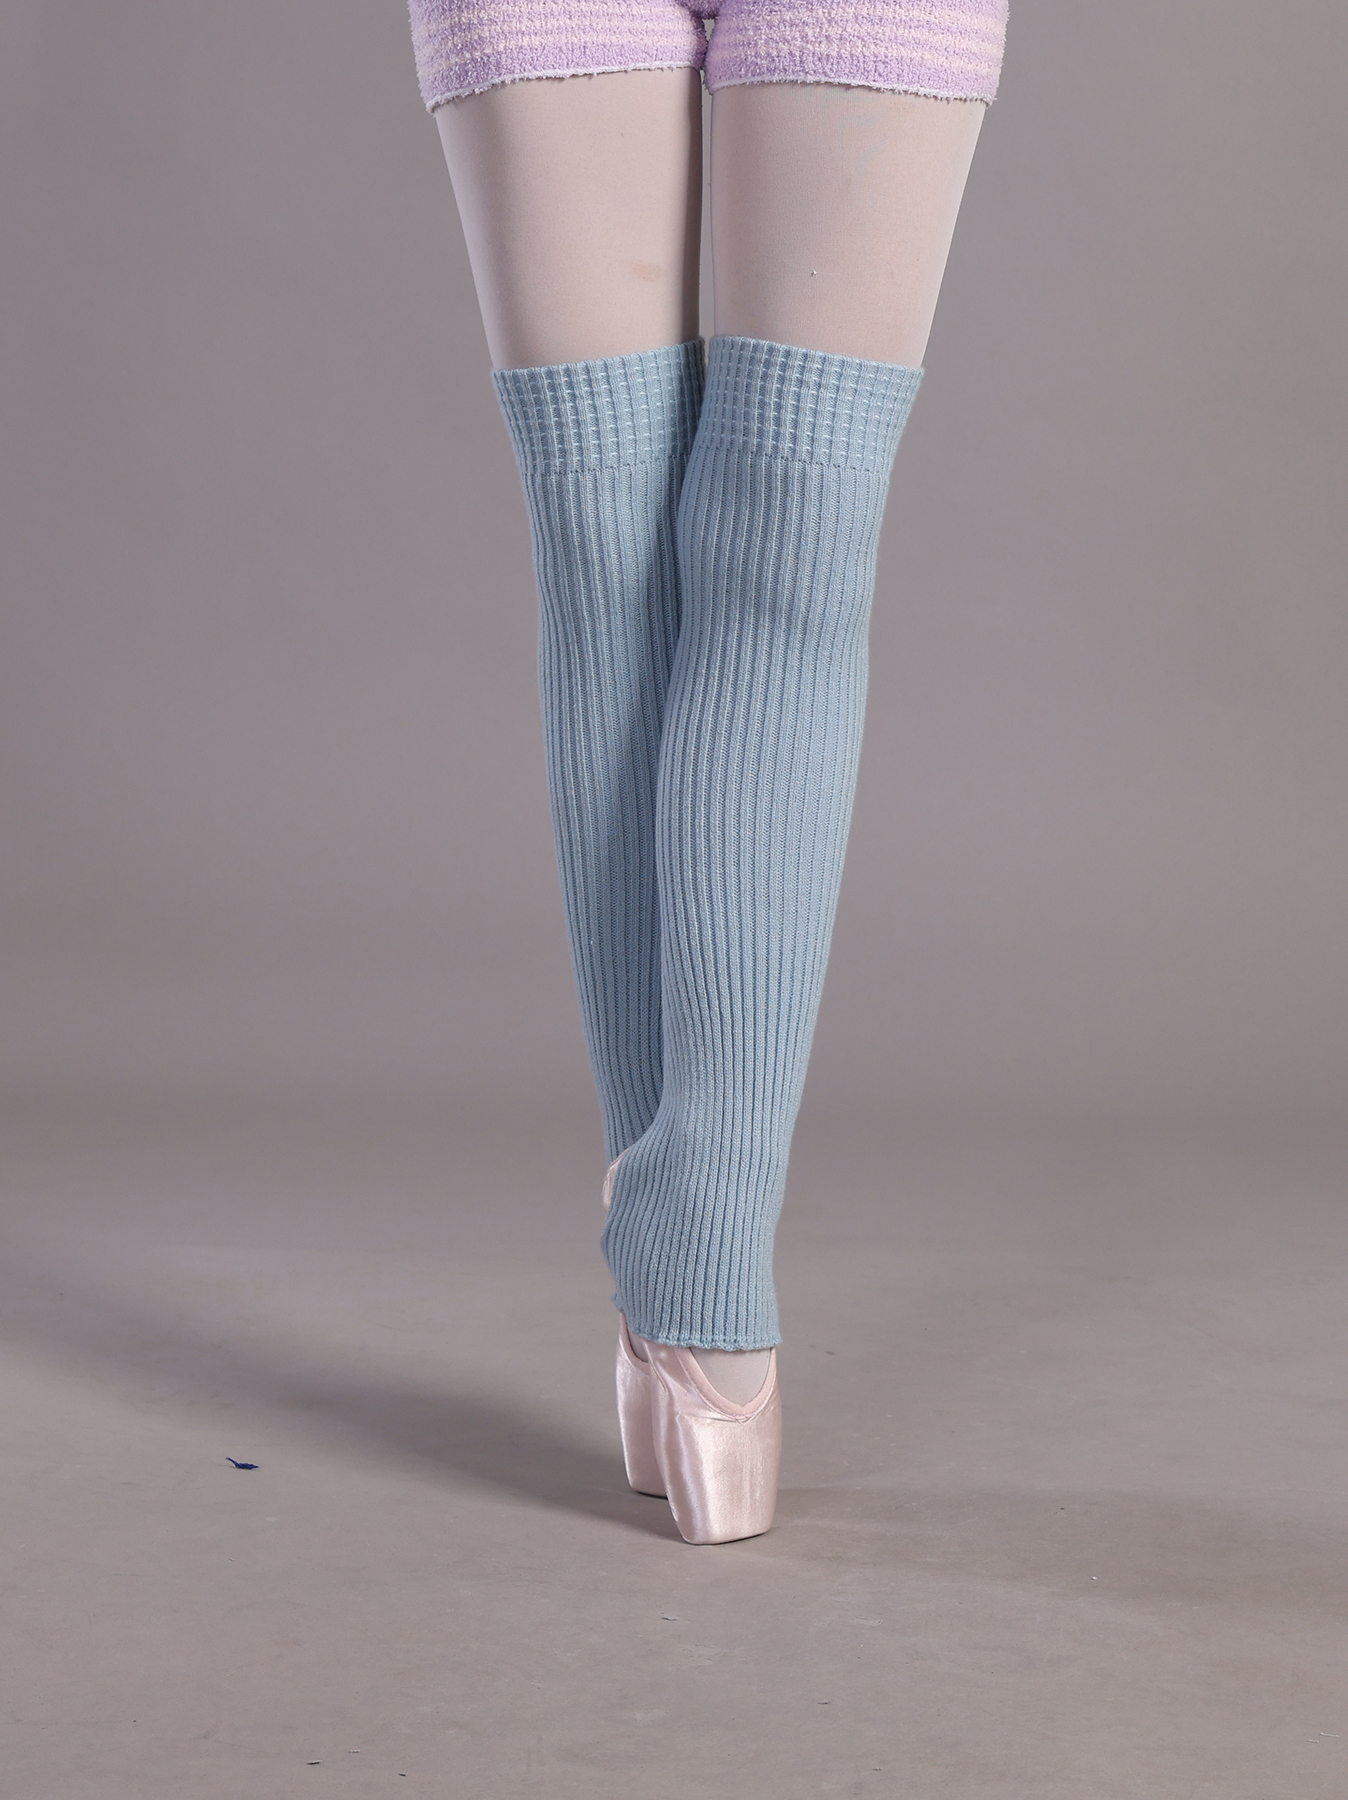 Sky Blue Leg Warmers, Ballet Leg Warmers, Knit Slouch Socks, Ballet Gift,  Long Leg Warmers, Blue Spats Women's, 80s Socks 